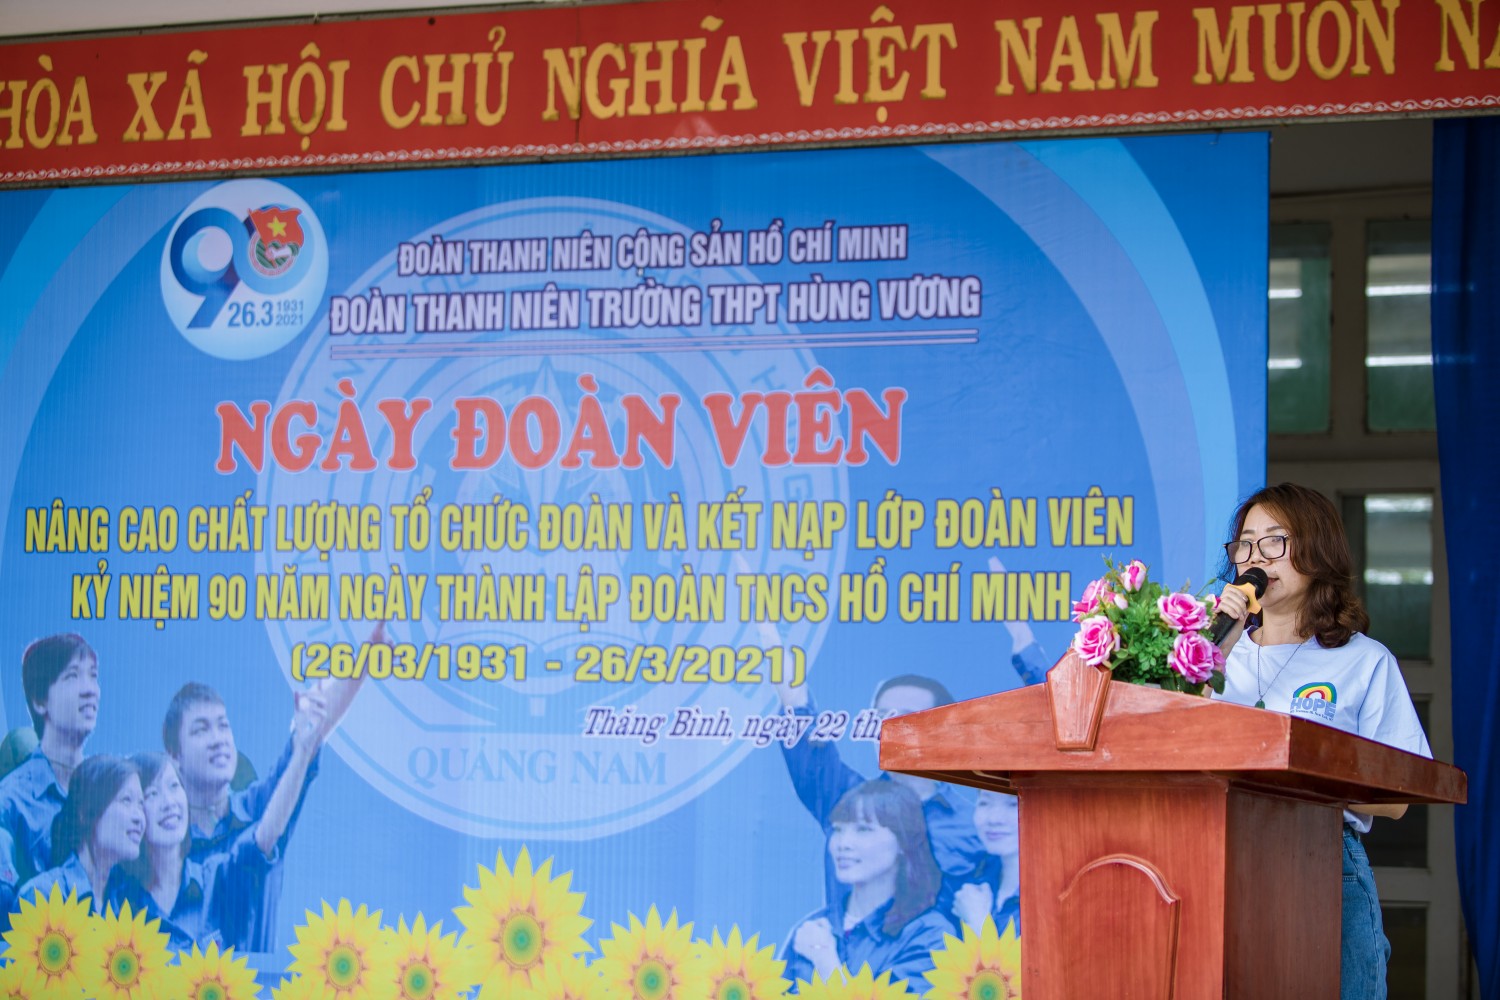 Đoàn trường THPT Hùng Vương phối hợp với BHDNGLL tổ chức ngày hội đoàn viên